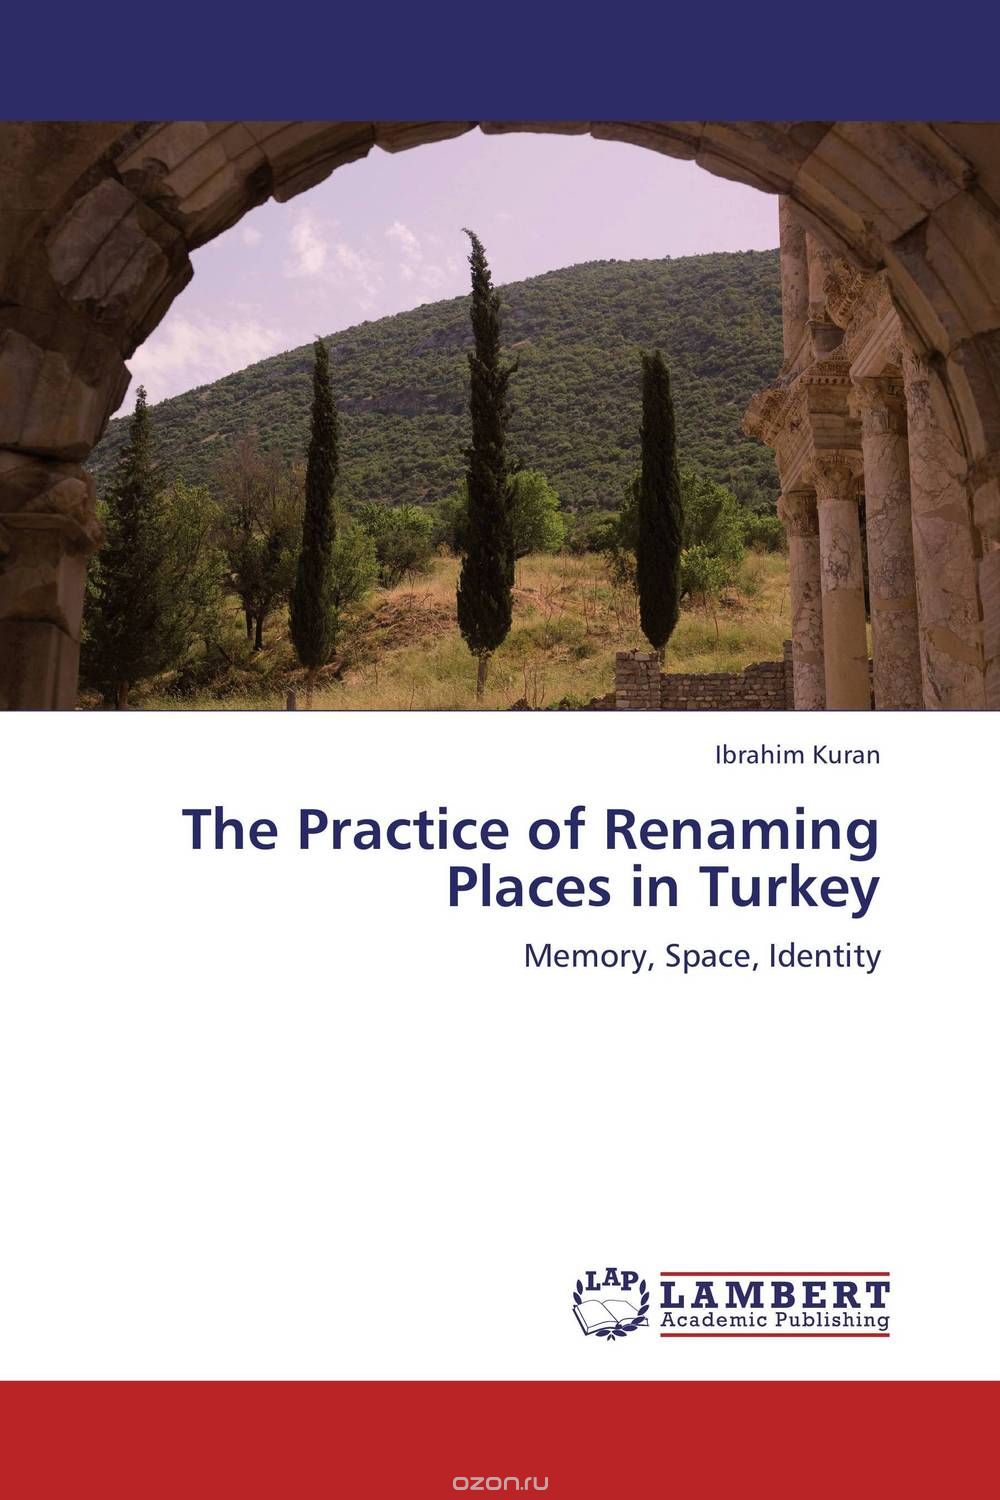 Скачать книгу "The Practice of Renaming Places in Turkey"